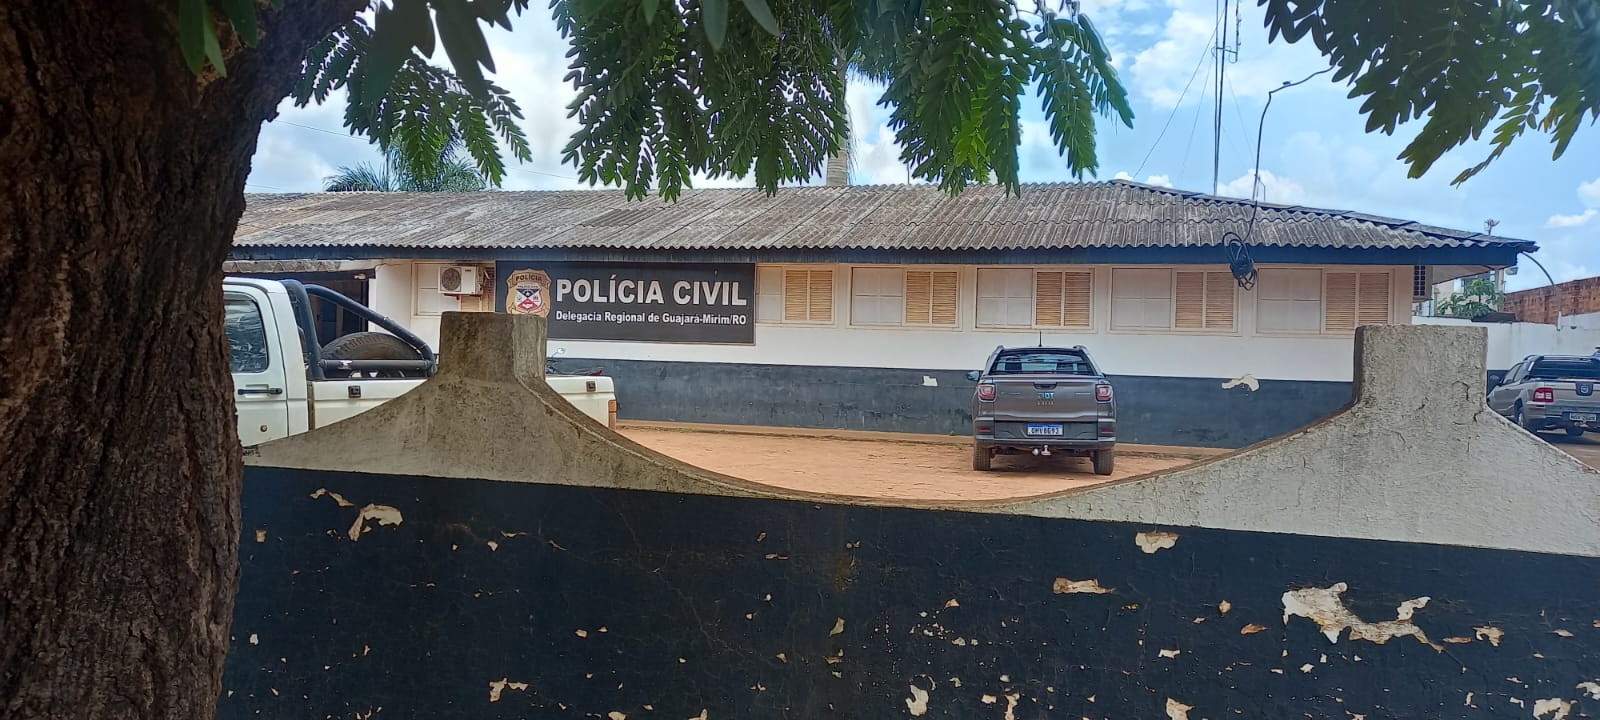 PRECARIEDADE: População denuncia péssimas condições na delegacia de Guajará-Mirim